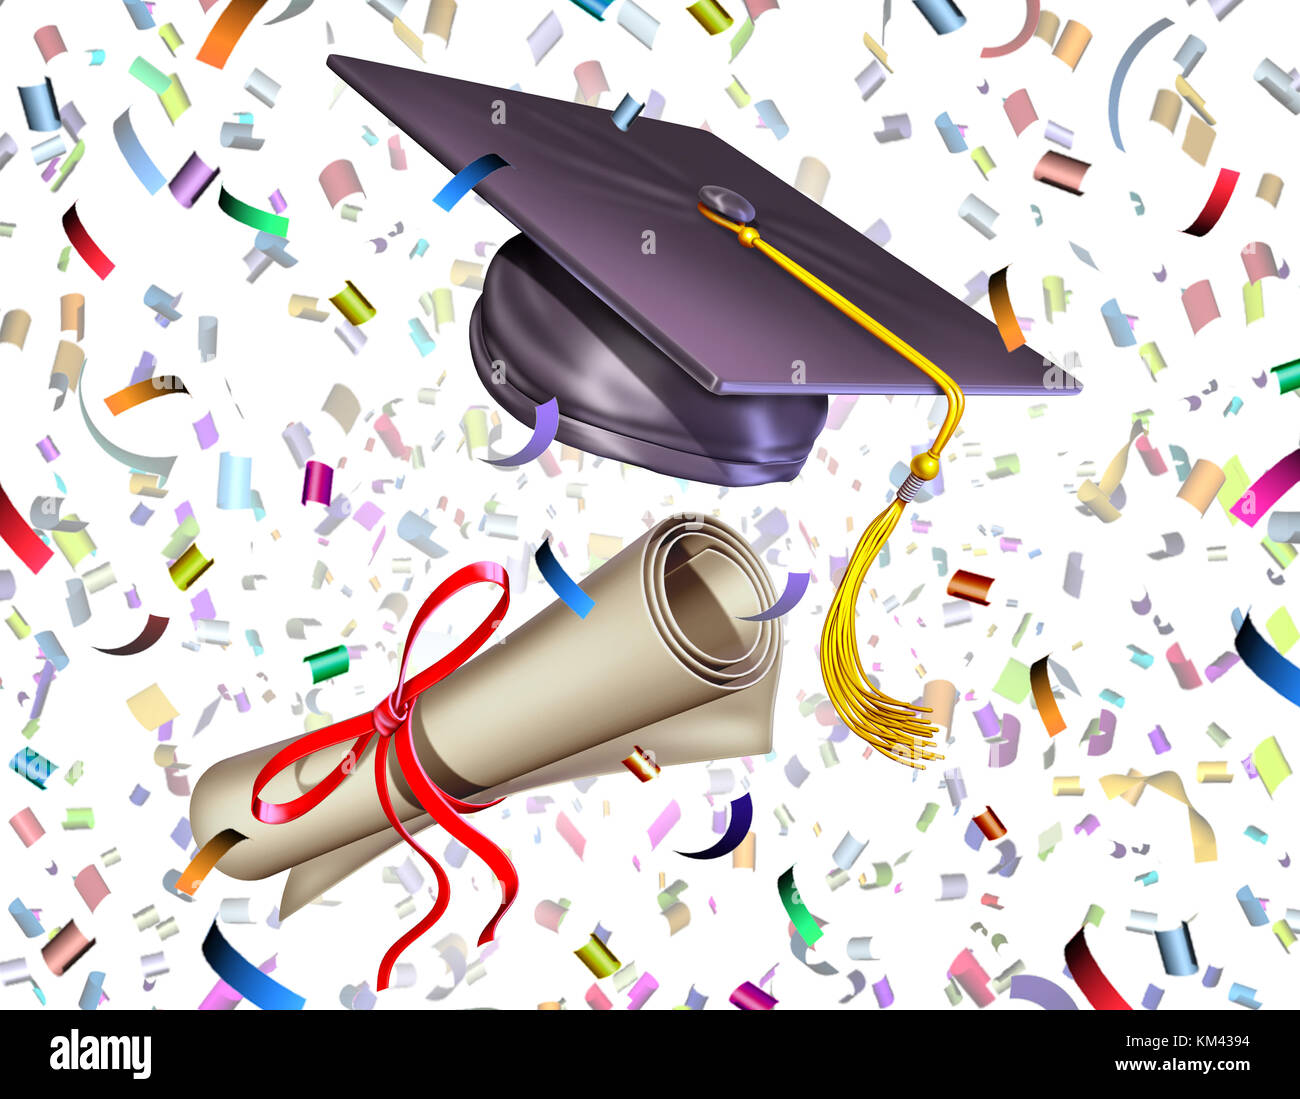 L'obtention du diplôme de l'éducation comme une cérémonie de célébration du mortier ou d'études supérieures diplôme cap et se faire secouer en l'air avec partie de confettis. Banque D'Images